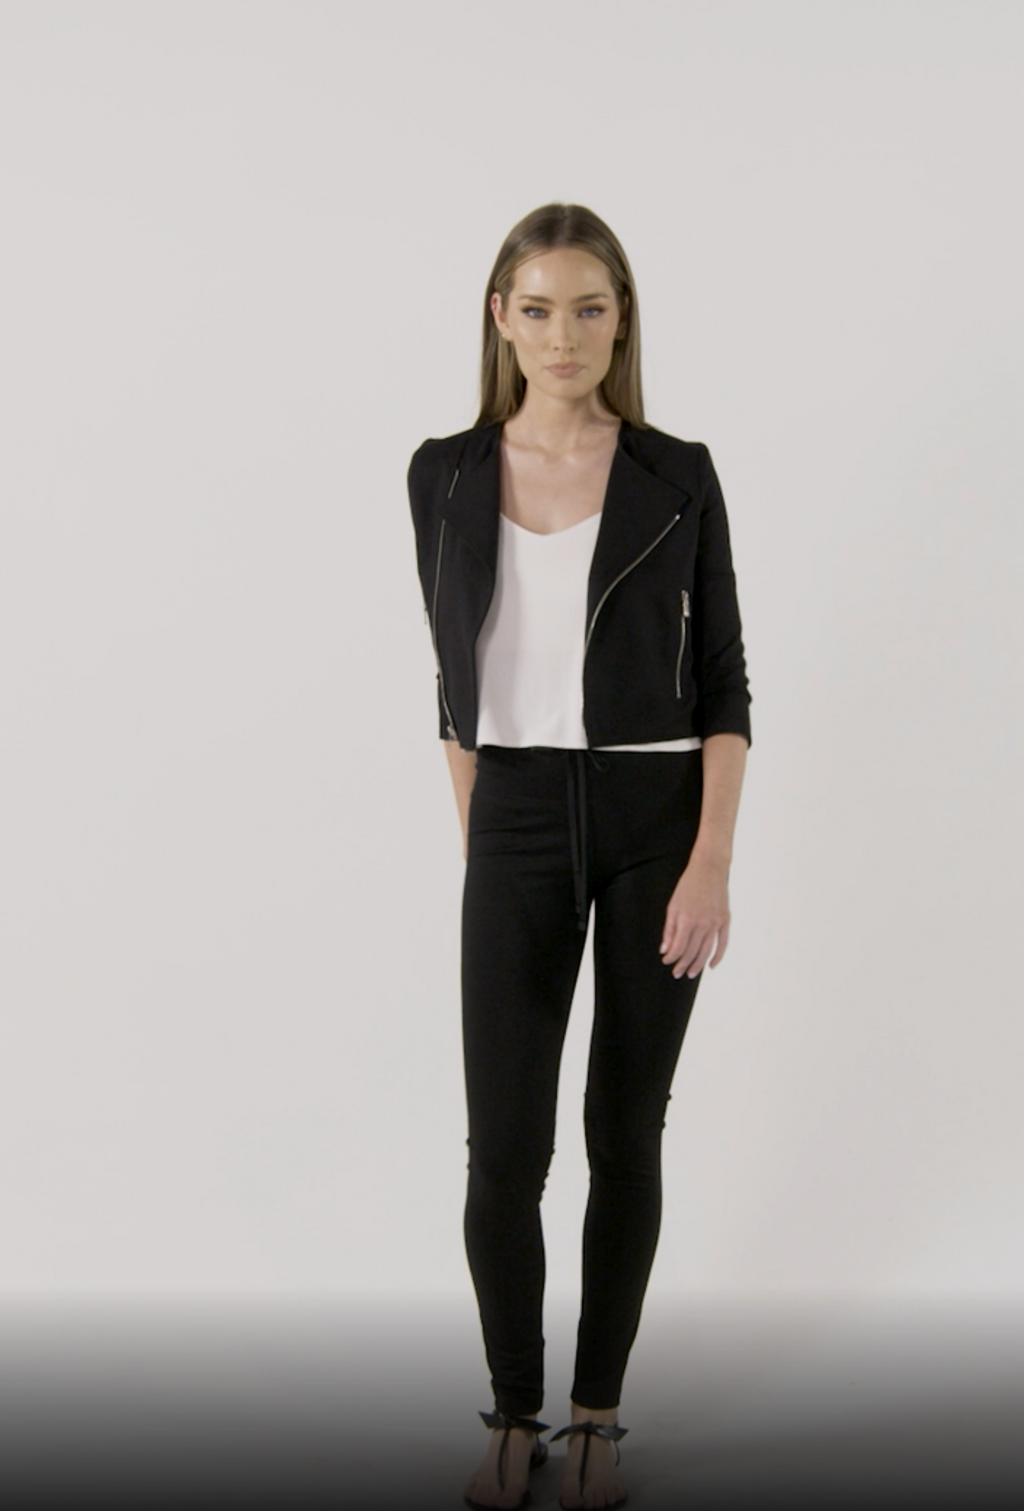 Model is wearing a black moto jacket Laura by Chloe Colette.